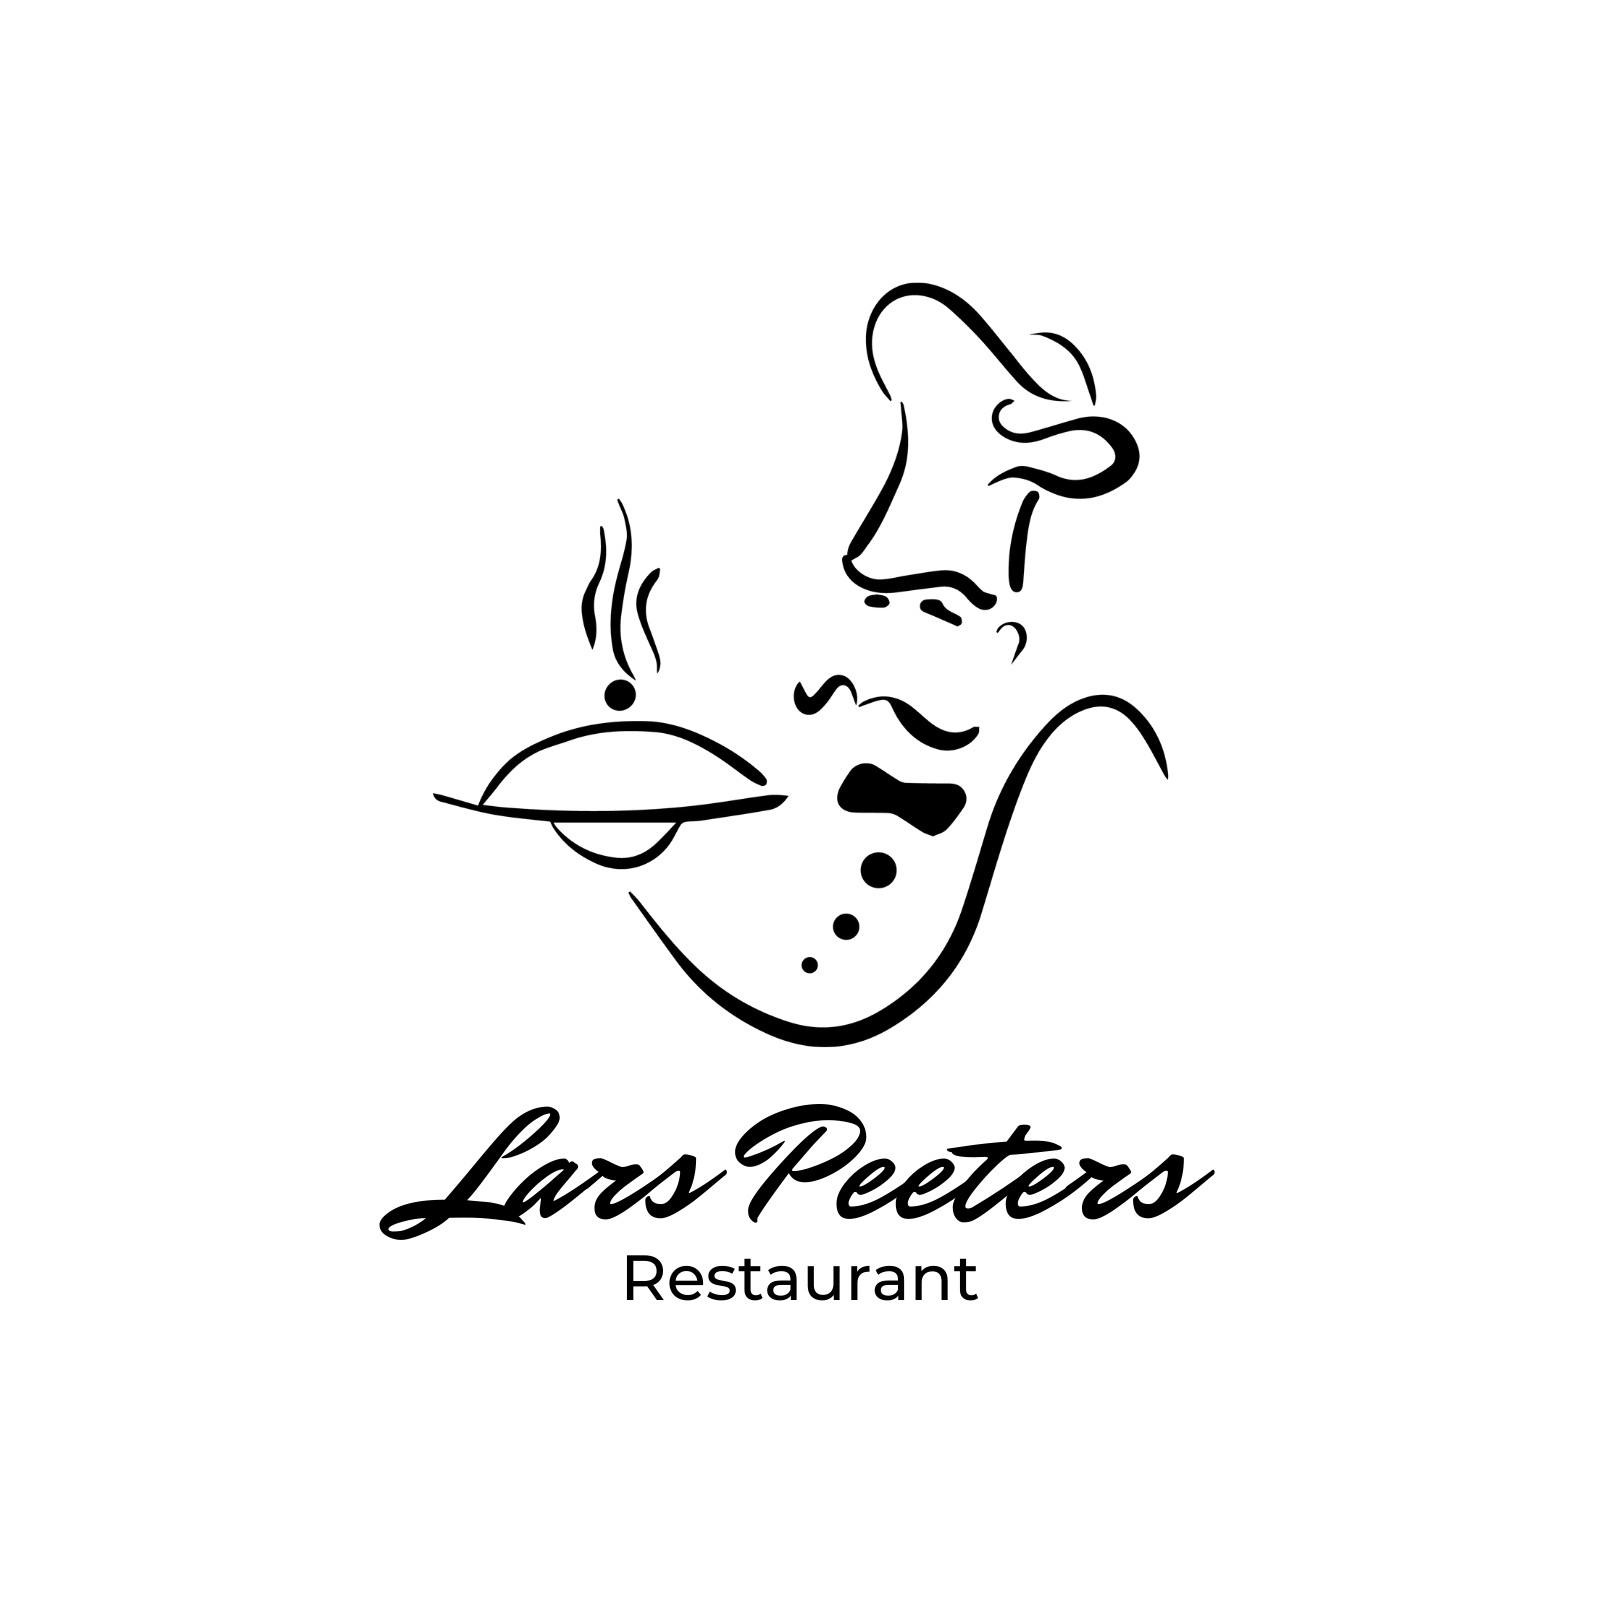 contemporary restaurant logo